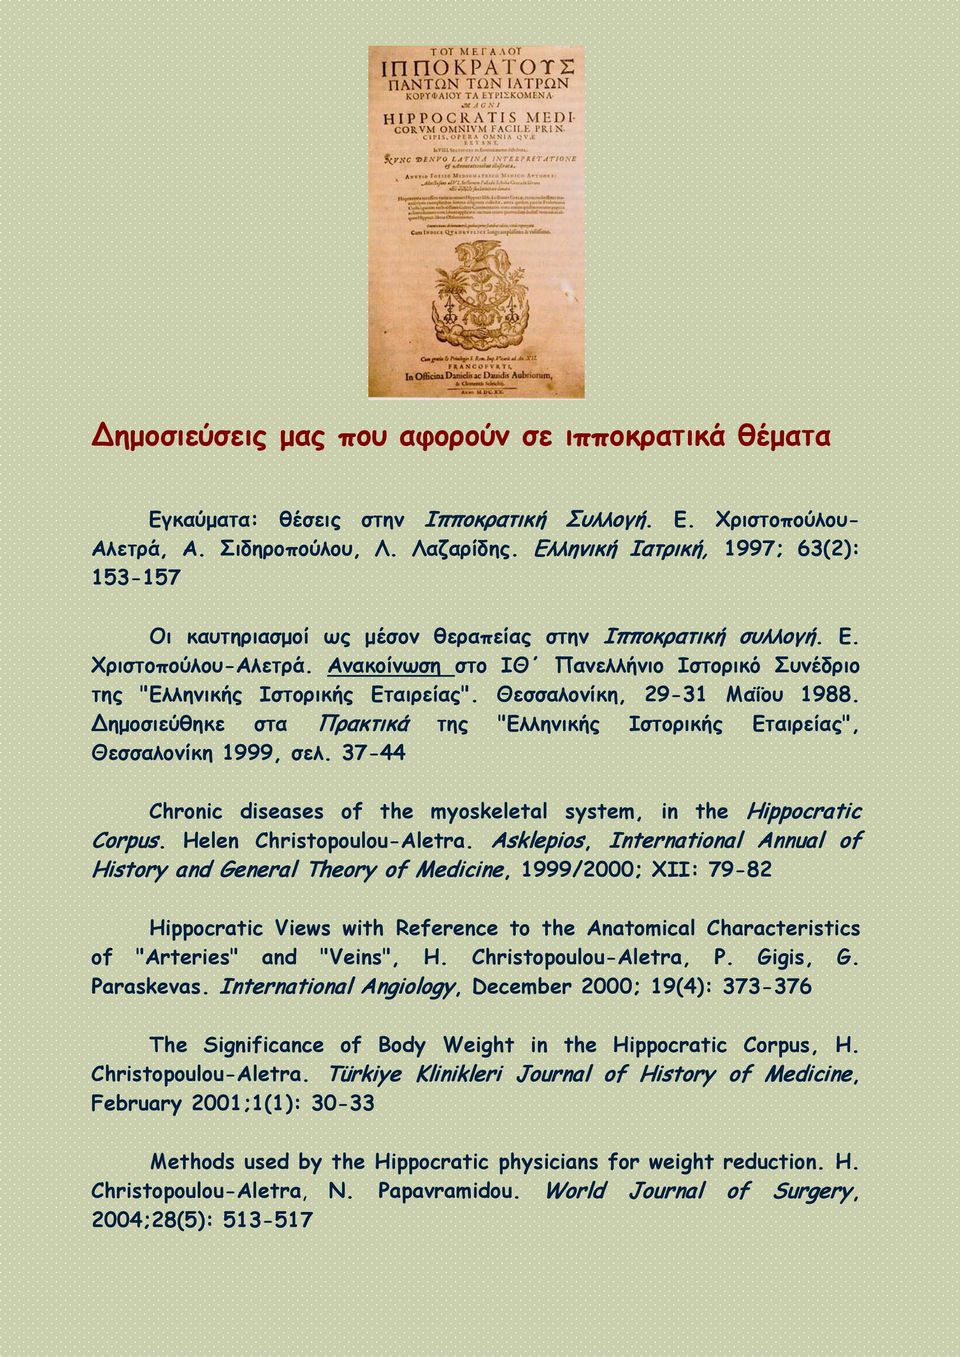 Ανακοίνωση στο ΙΘ Πανελλήνιο Ιστορικό Συνέδριο της "Ελληνικής Ιστορικής Εταιρείας". Θεσσαλονίκη, 29-31 Μαΐου 1988. Δημοσιεύθηκε στα Πρακτικά της "Ελληνικής Ιστορικής Εταιρείας", Θεσσαλονίκη 1999, σελ.